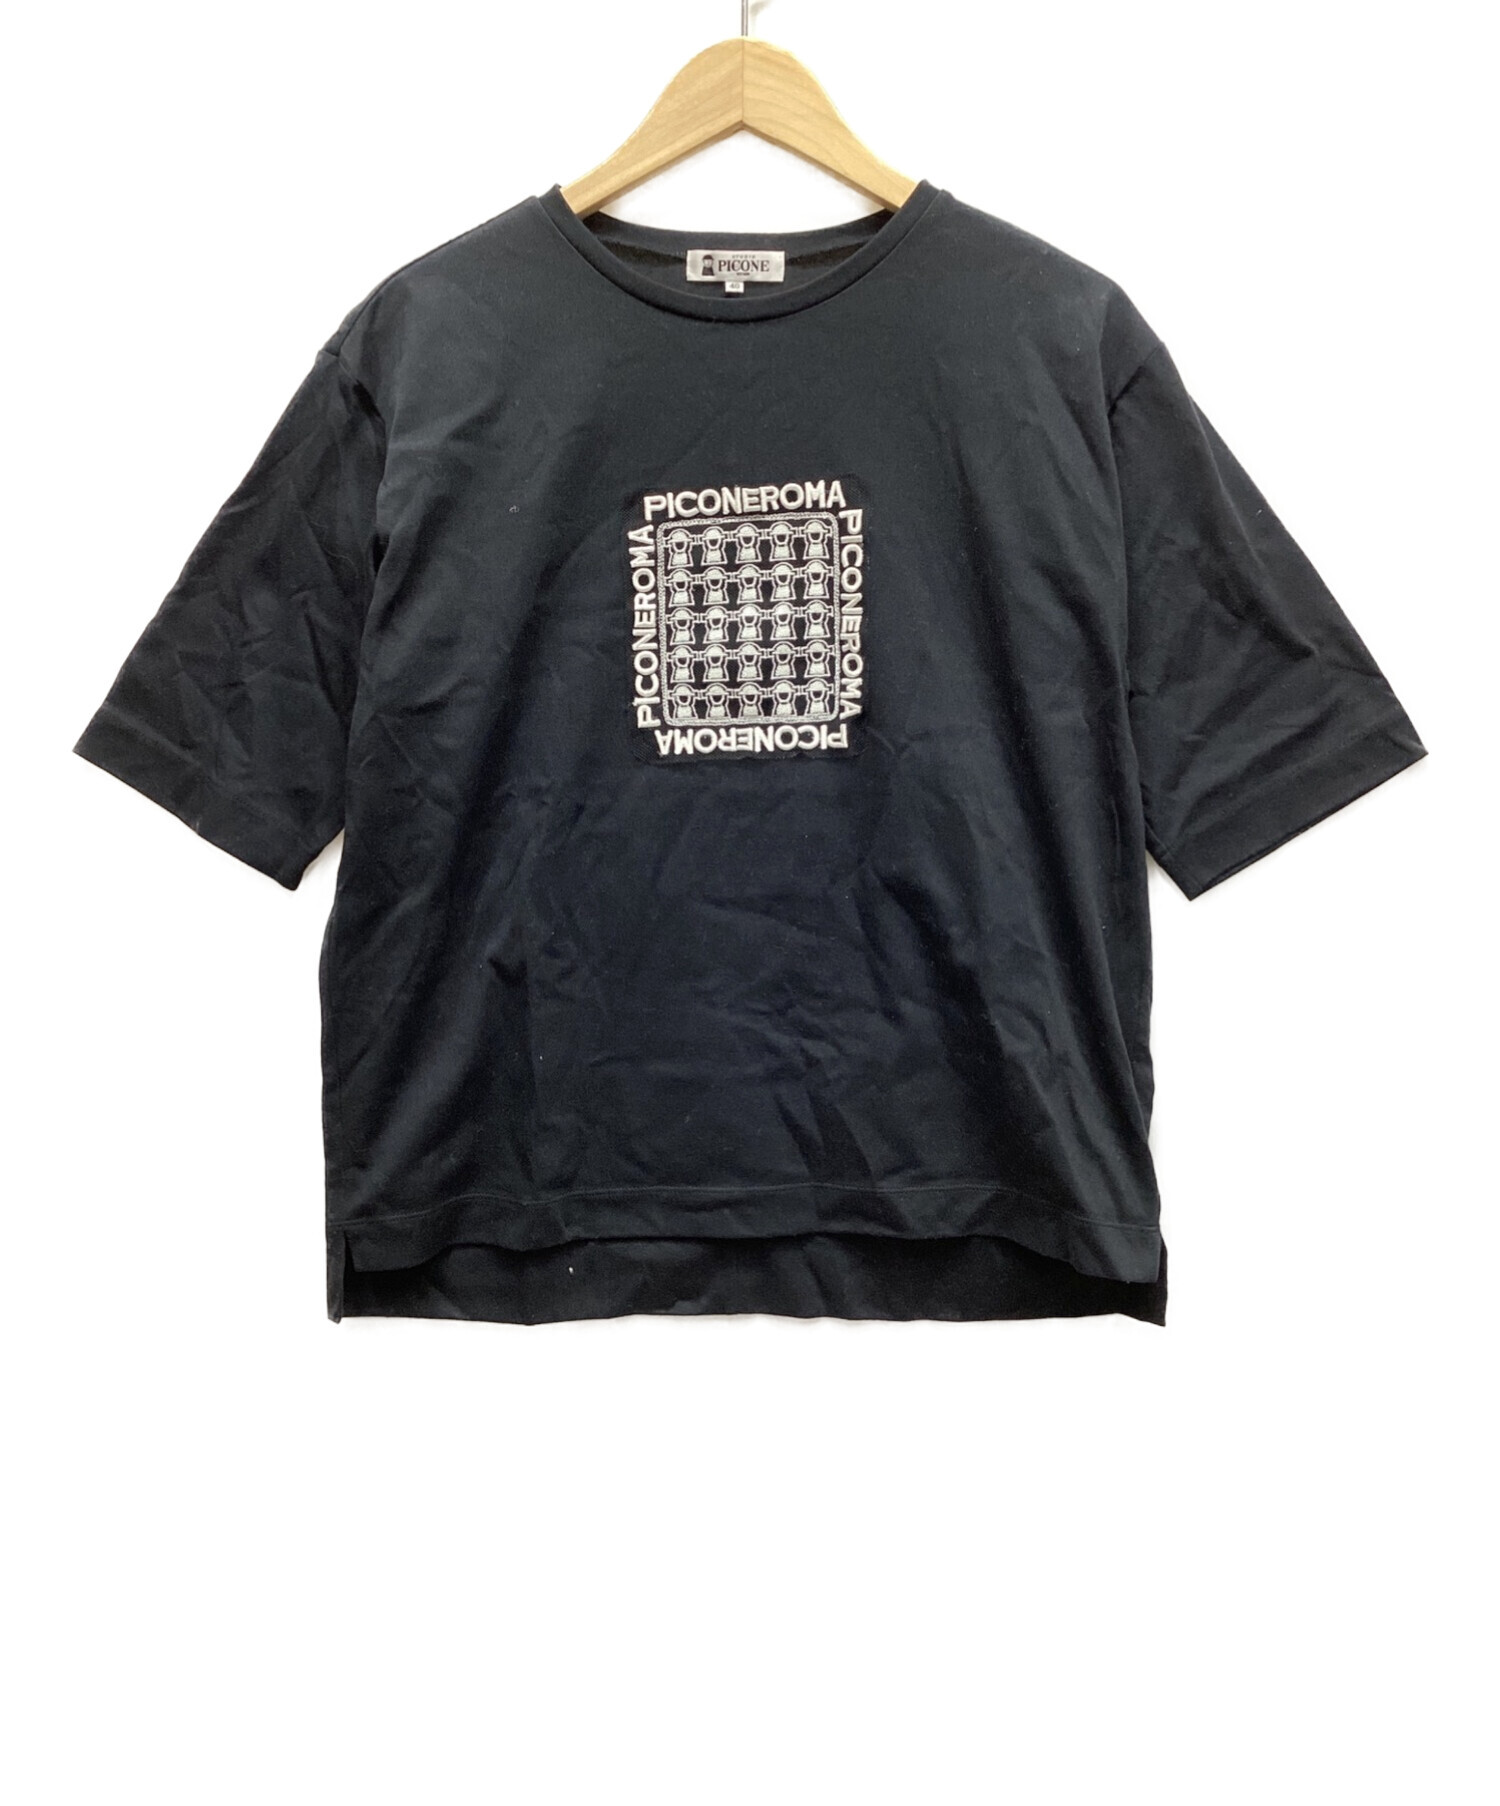 ピッコーネカットソー - Tシャツ/カットソー(半袖/袖なし)